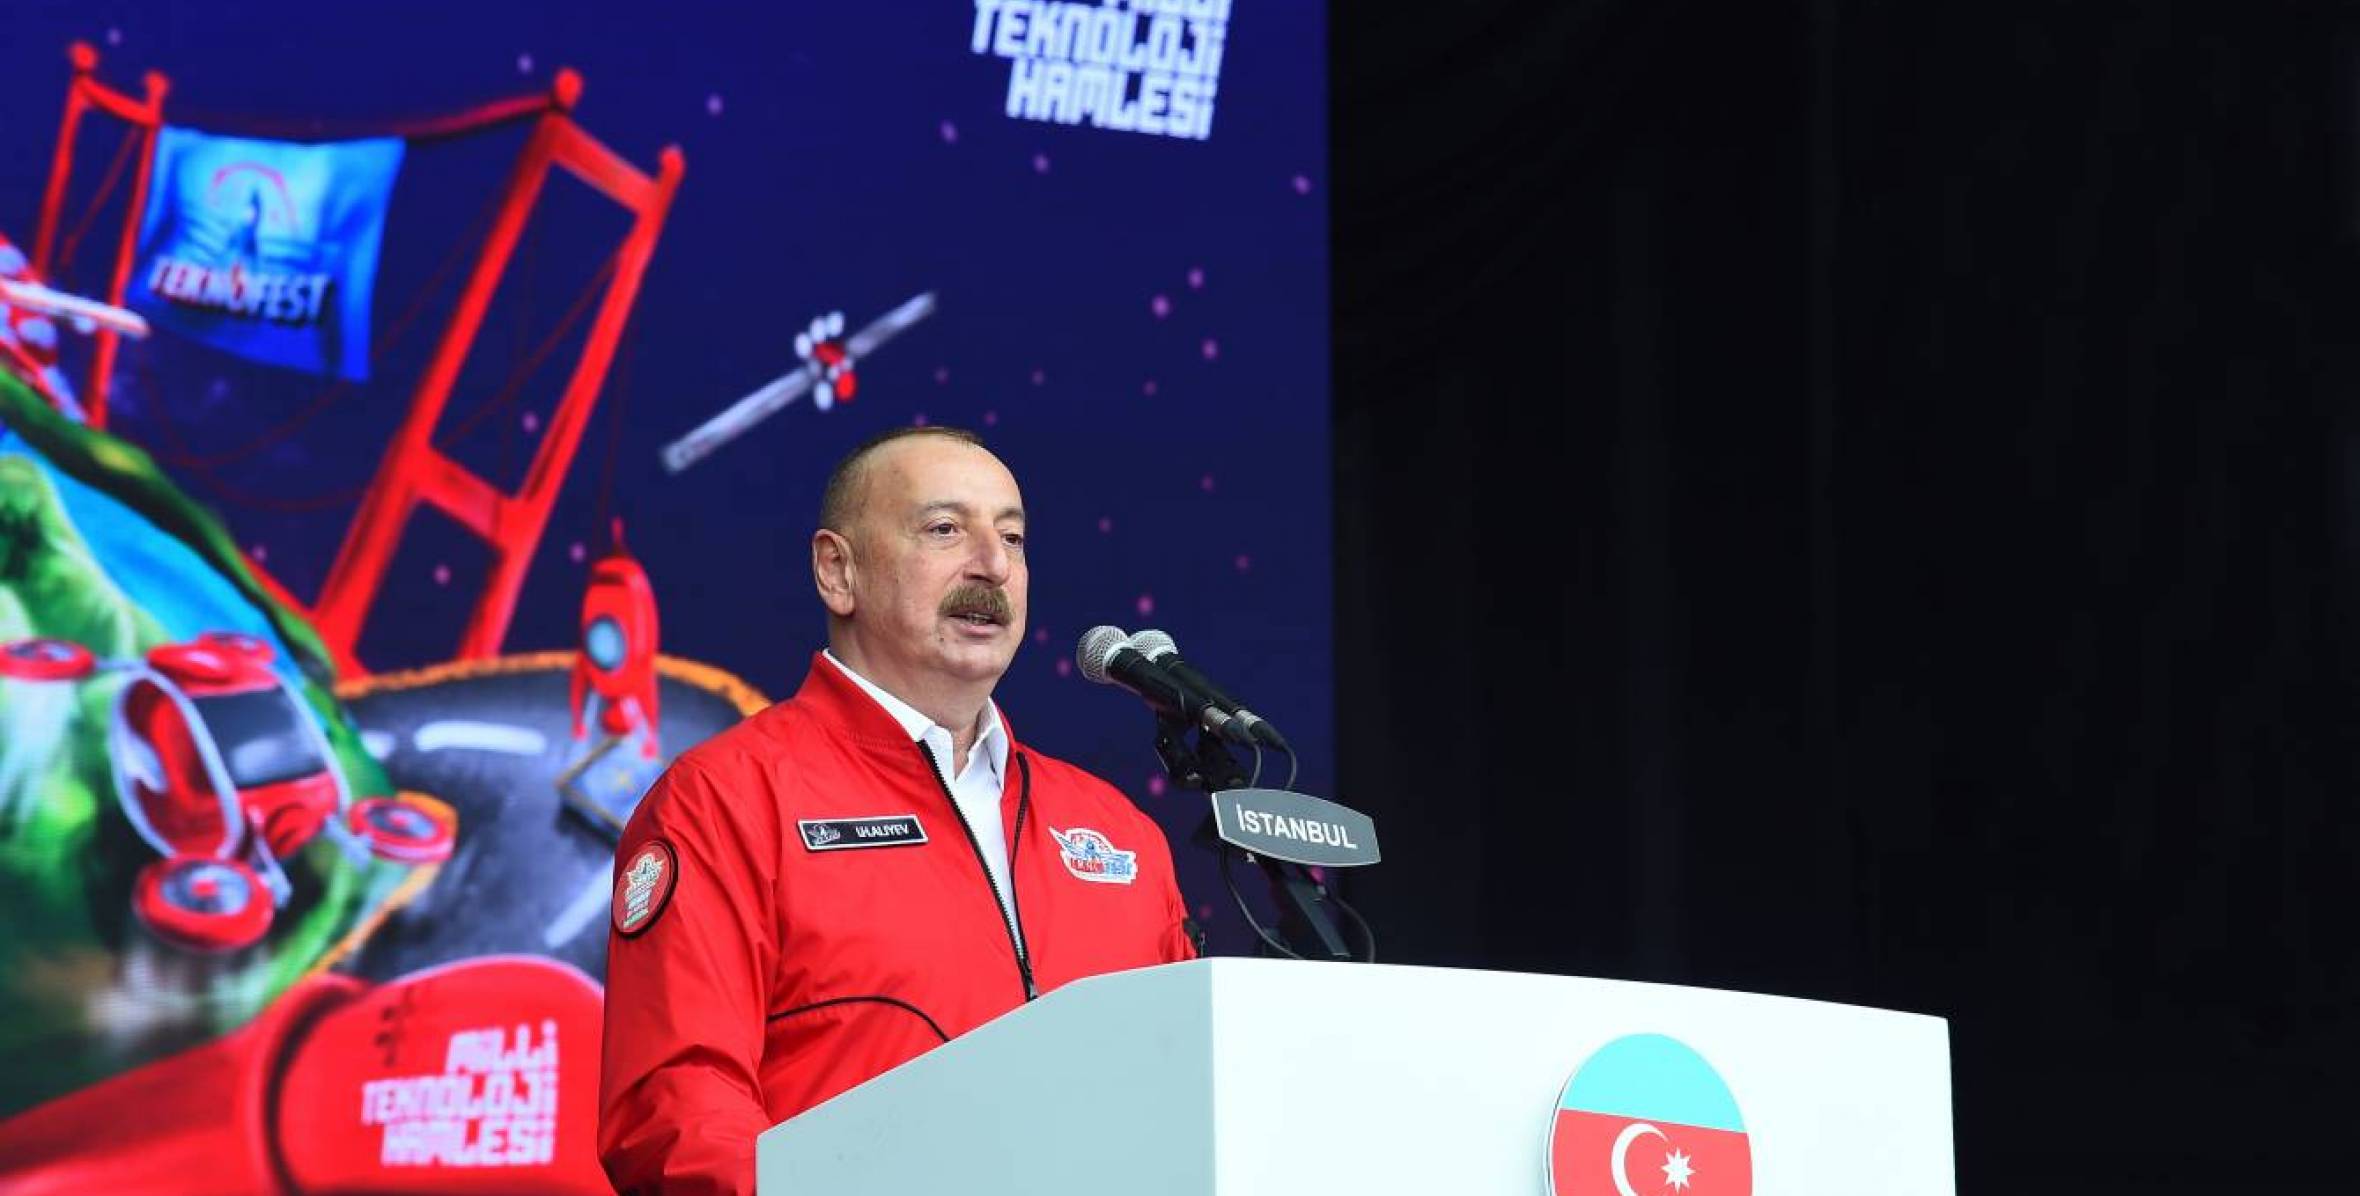 Речь Ильхама Алиева на фестивале «ТЕХНОФЕСТ» в Стамбуле